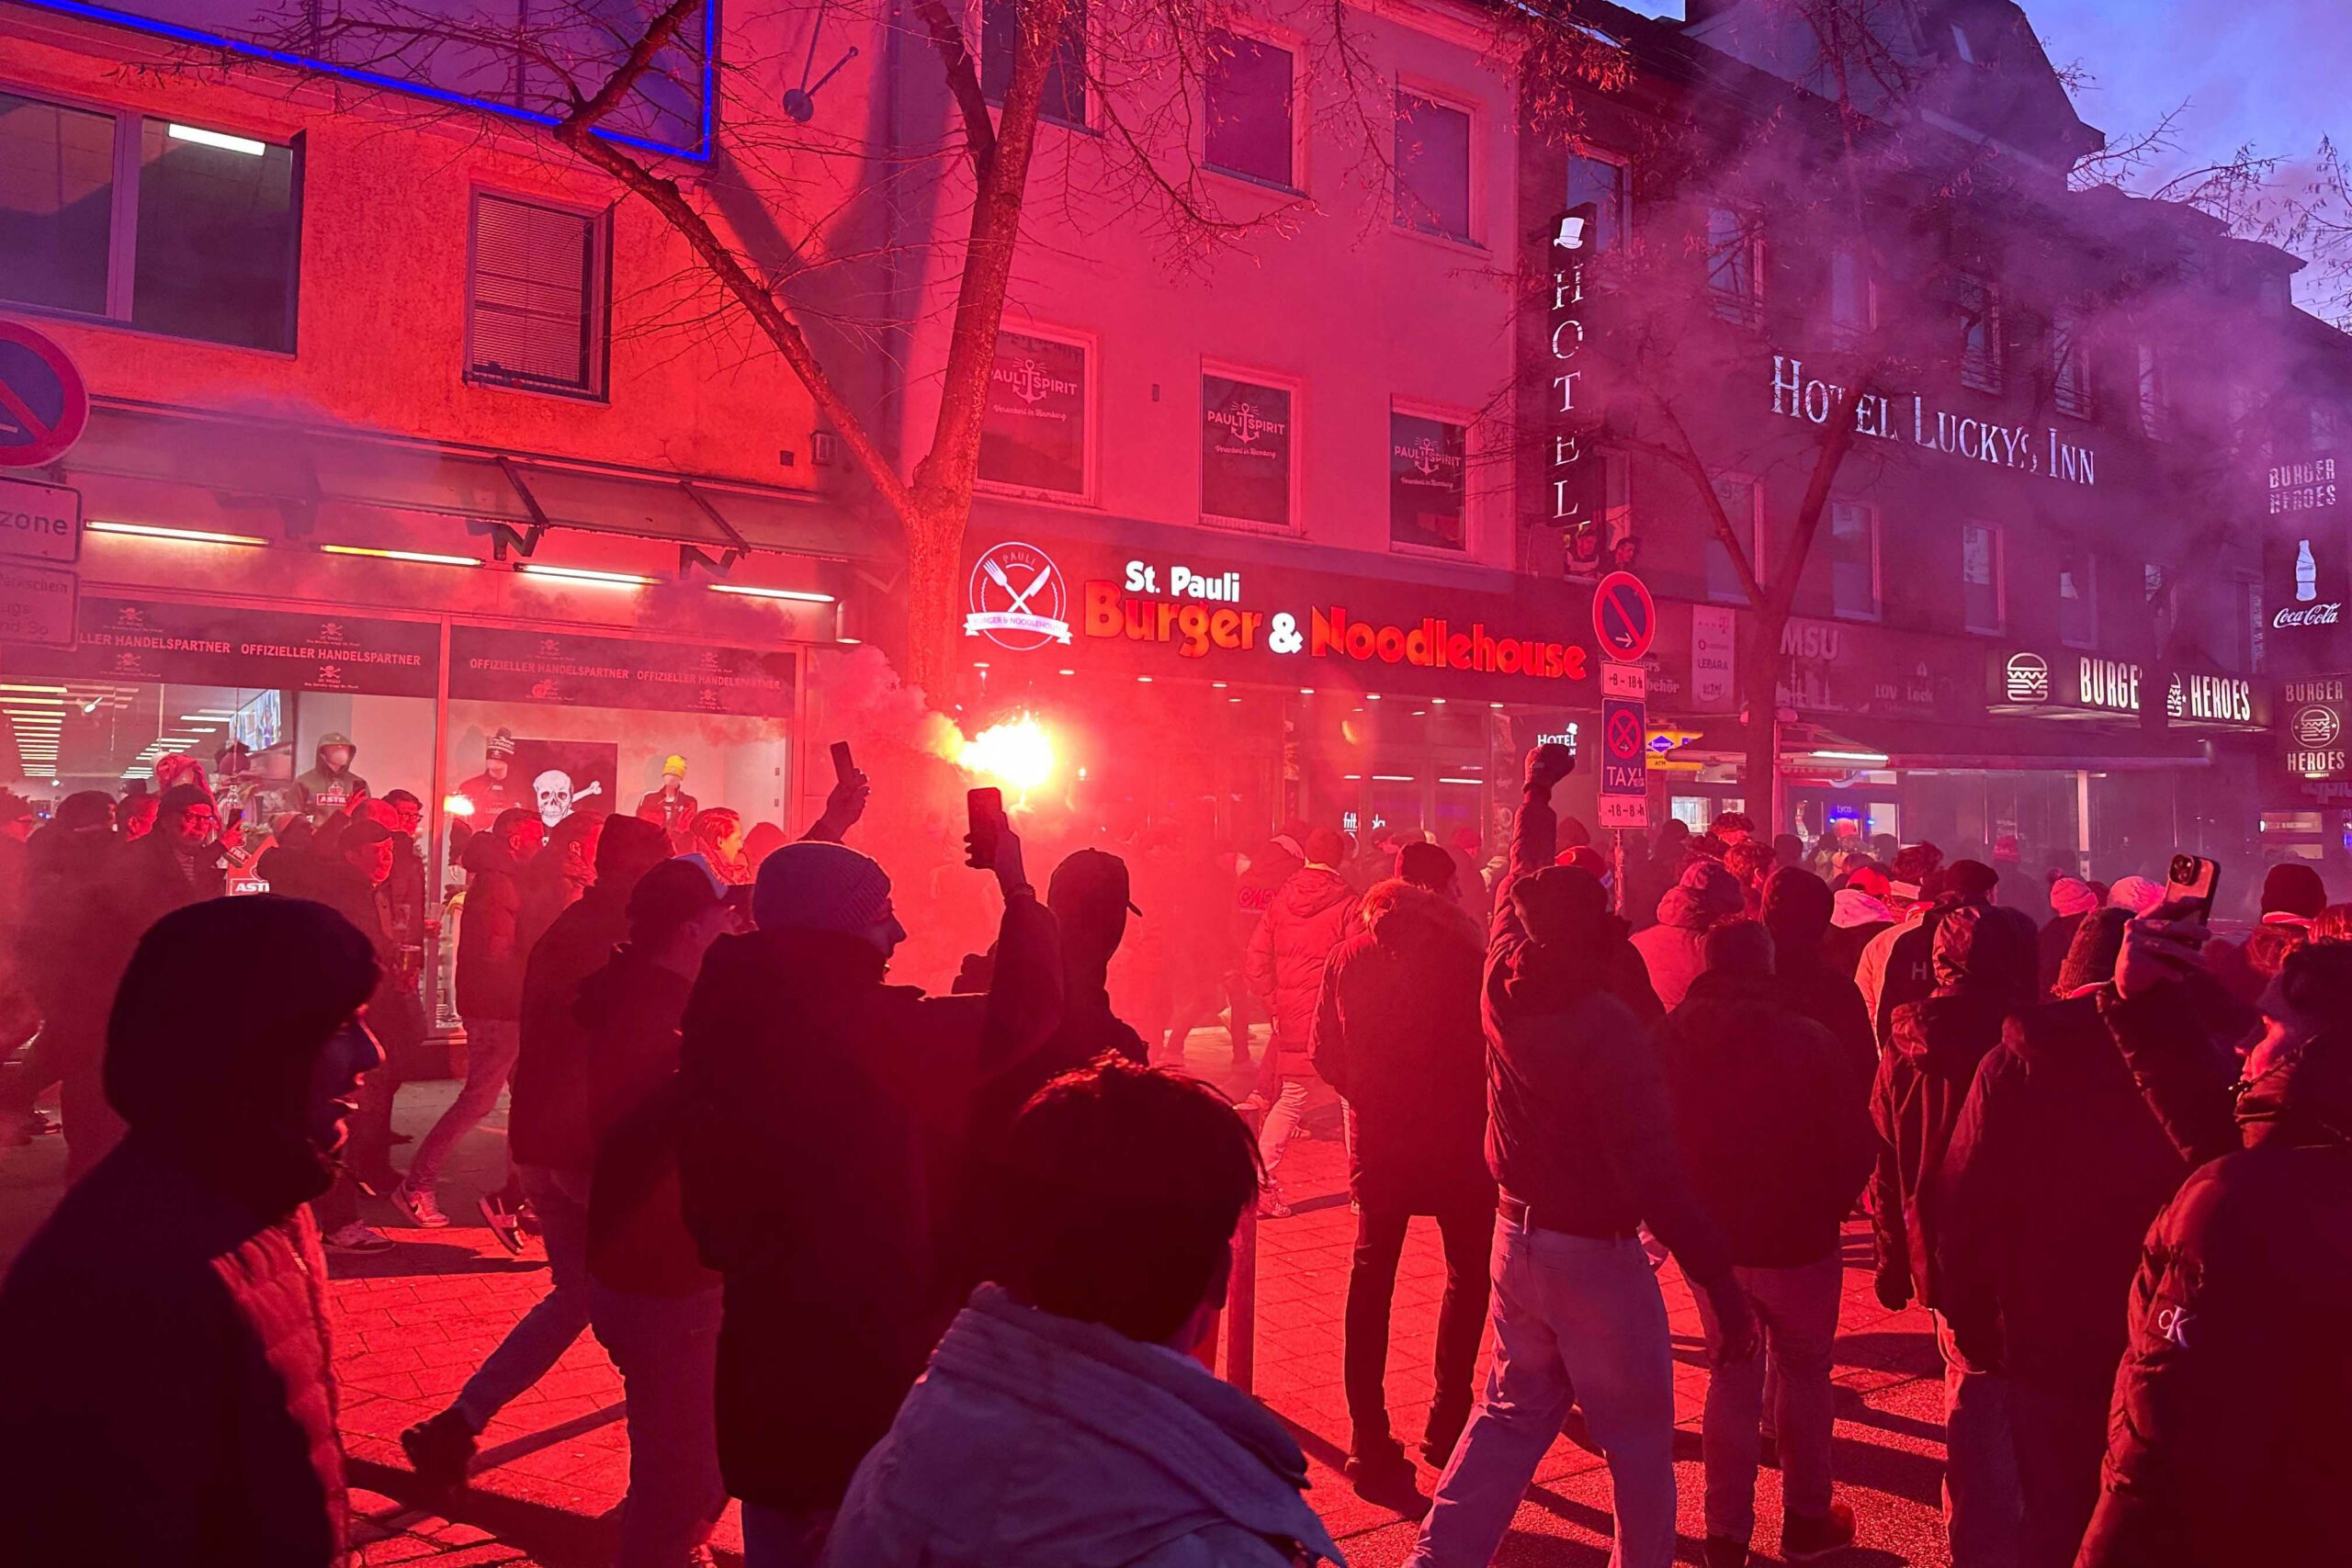 Antwerpen-Fans haben sich auf der Reeperbahn versammelt, um gemeinsam zum Stadion zu fahren – dabei wurde Pyrotechnik gezündet.